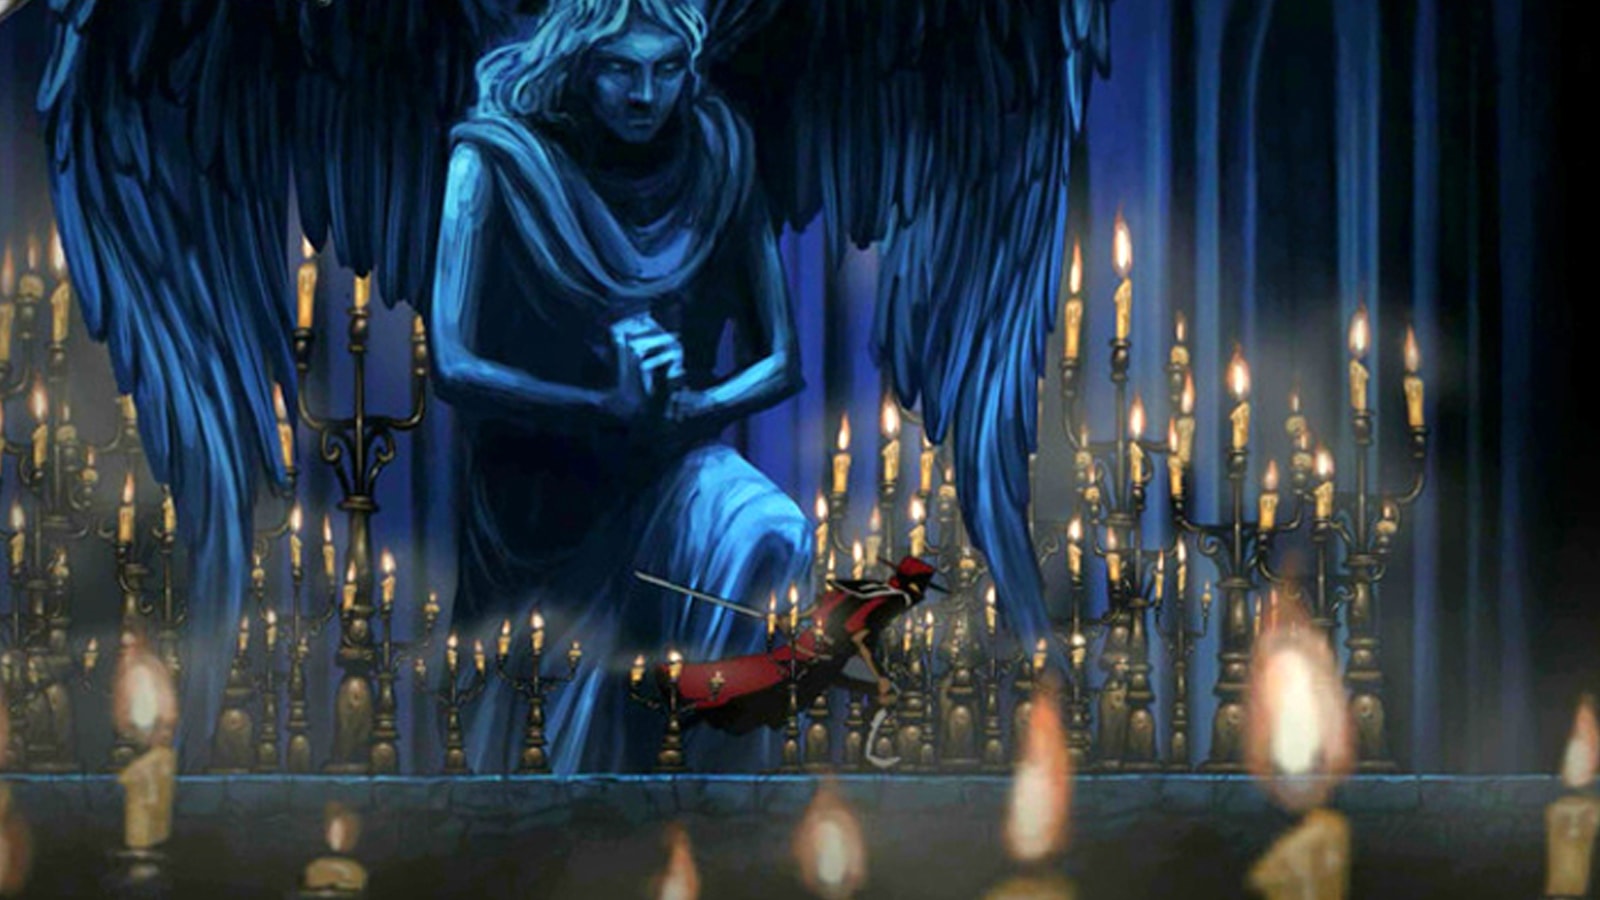 Un espadachín de rojo corre por delante de la espeluznante estatua de un ángel en un pasillo lleno de candelabros encendidos.